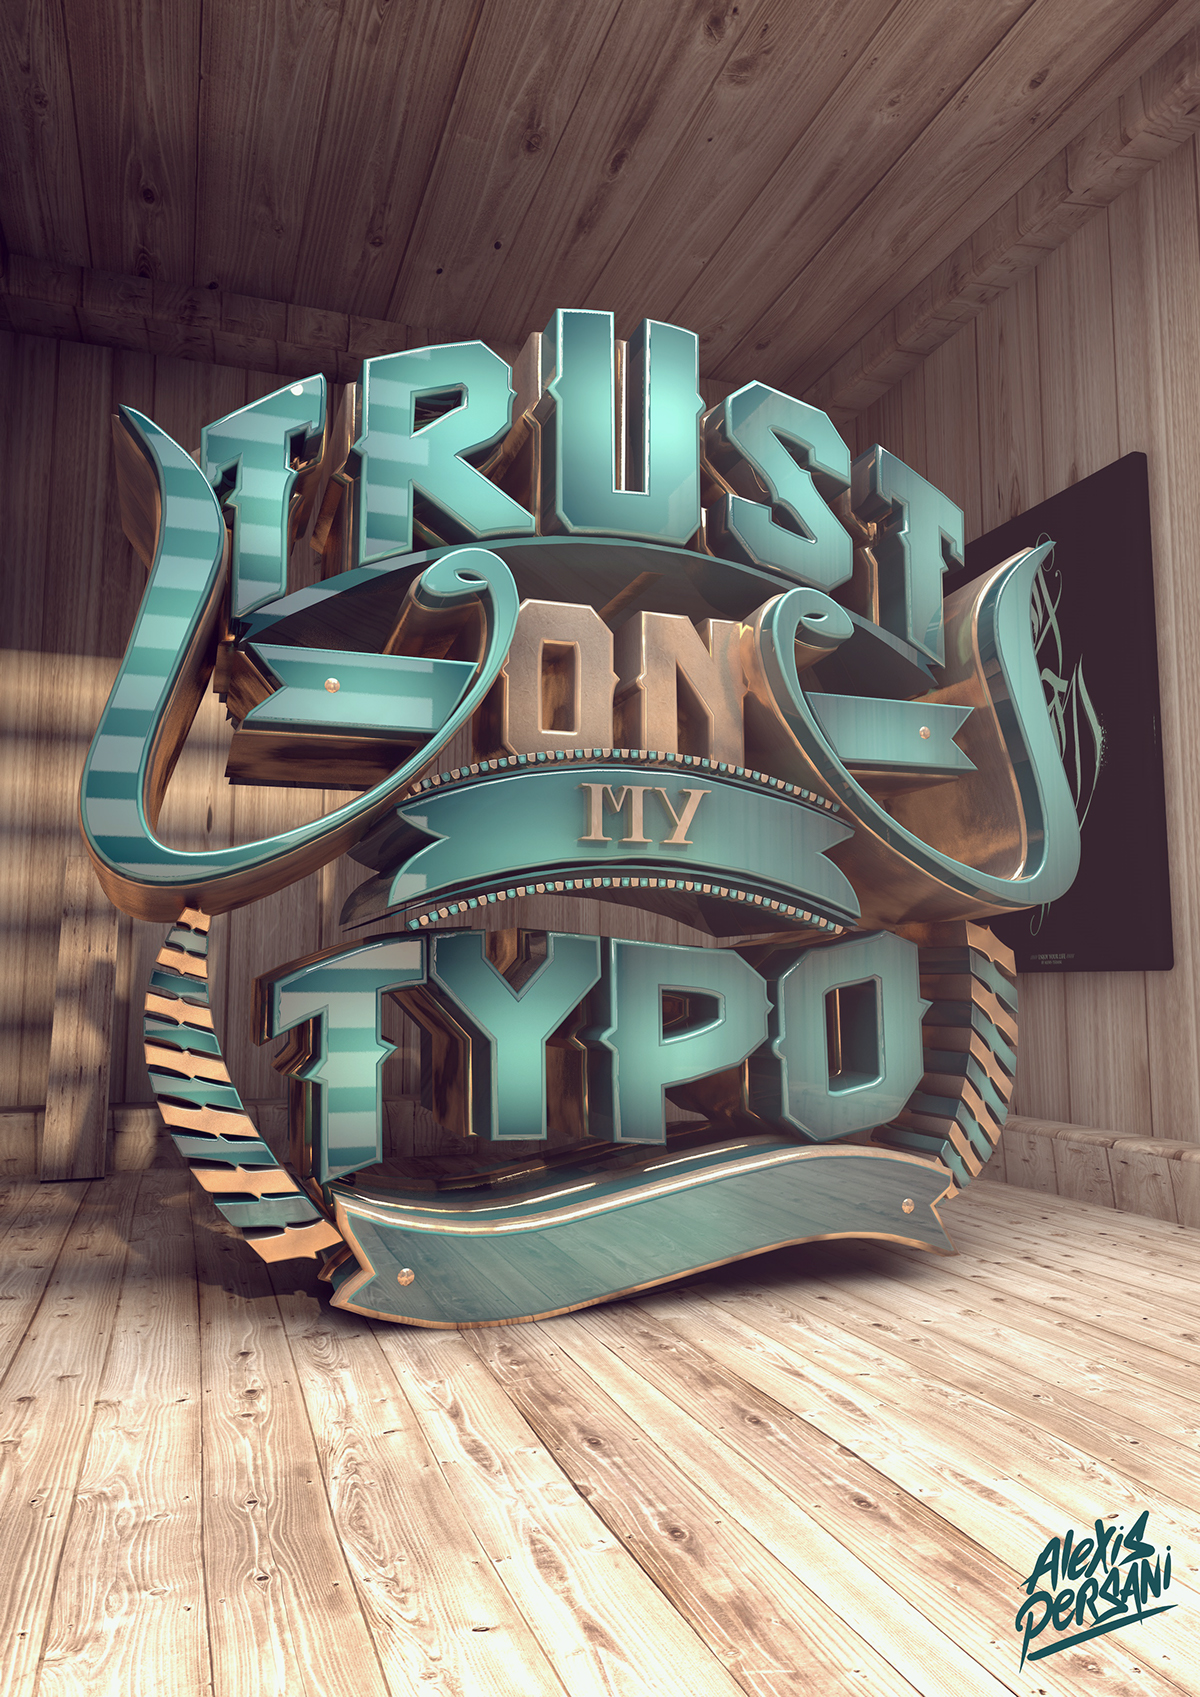 trust on my typo Typographie